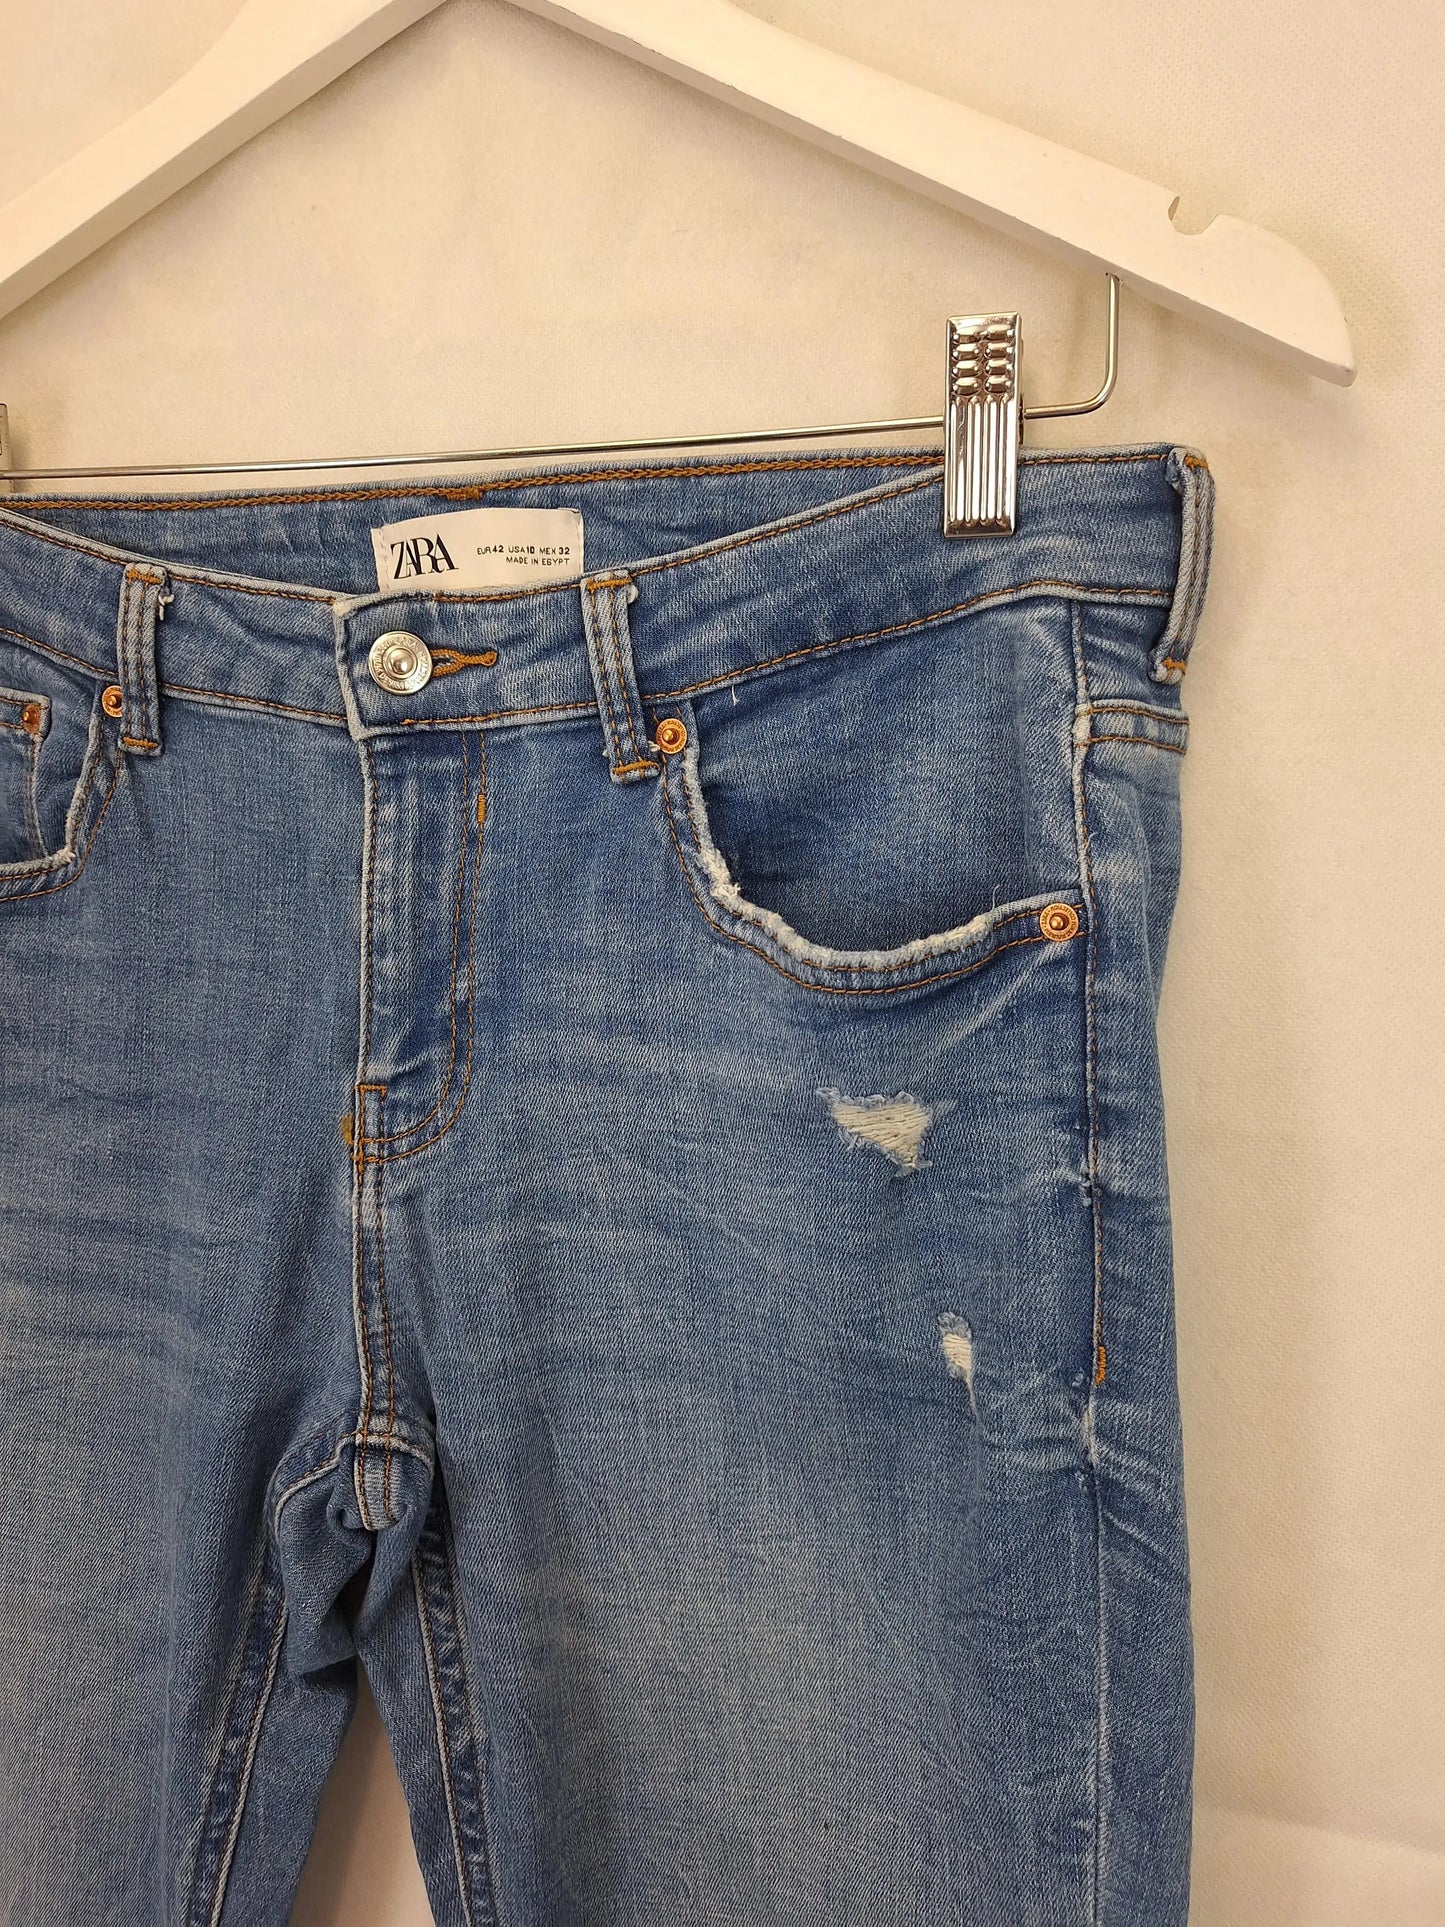 Zara Distressed Denim Jeans Size 14